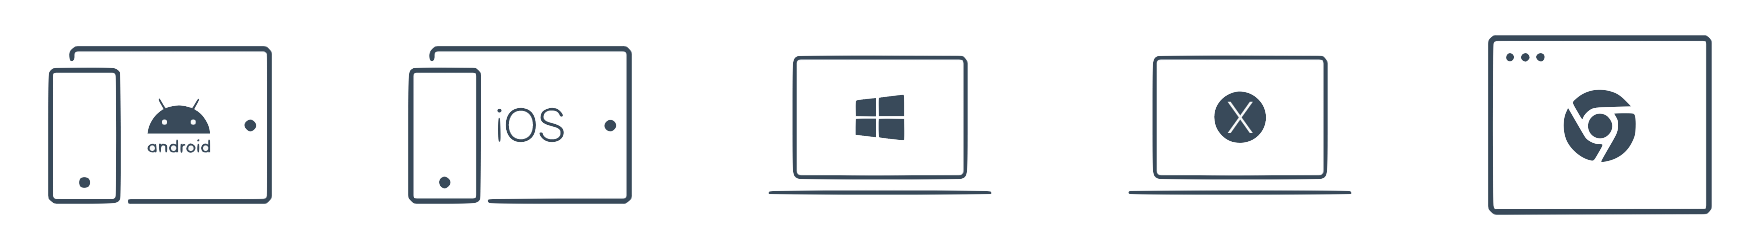 Die Praxissoftware für Windows, Mac und alle mobilen Endgeräte